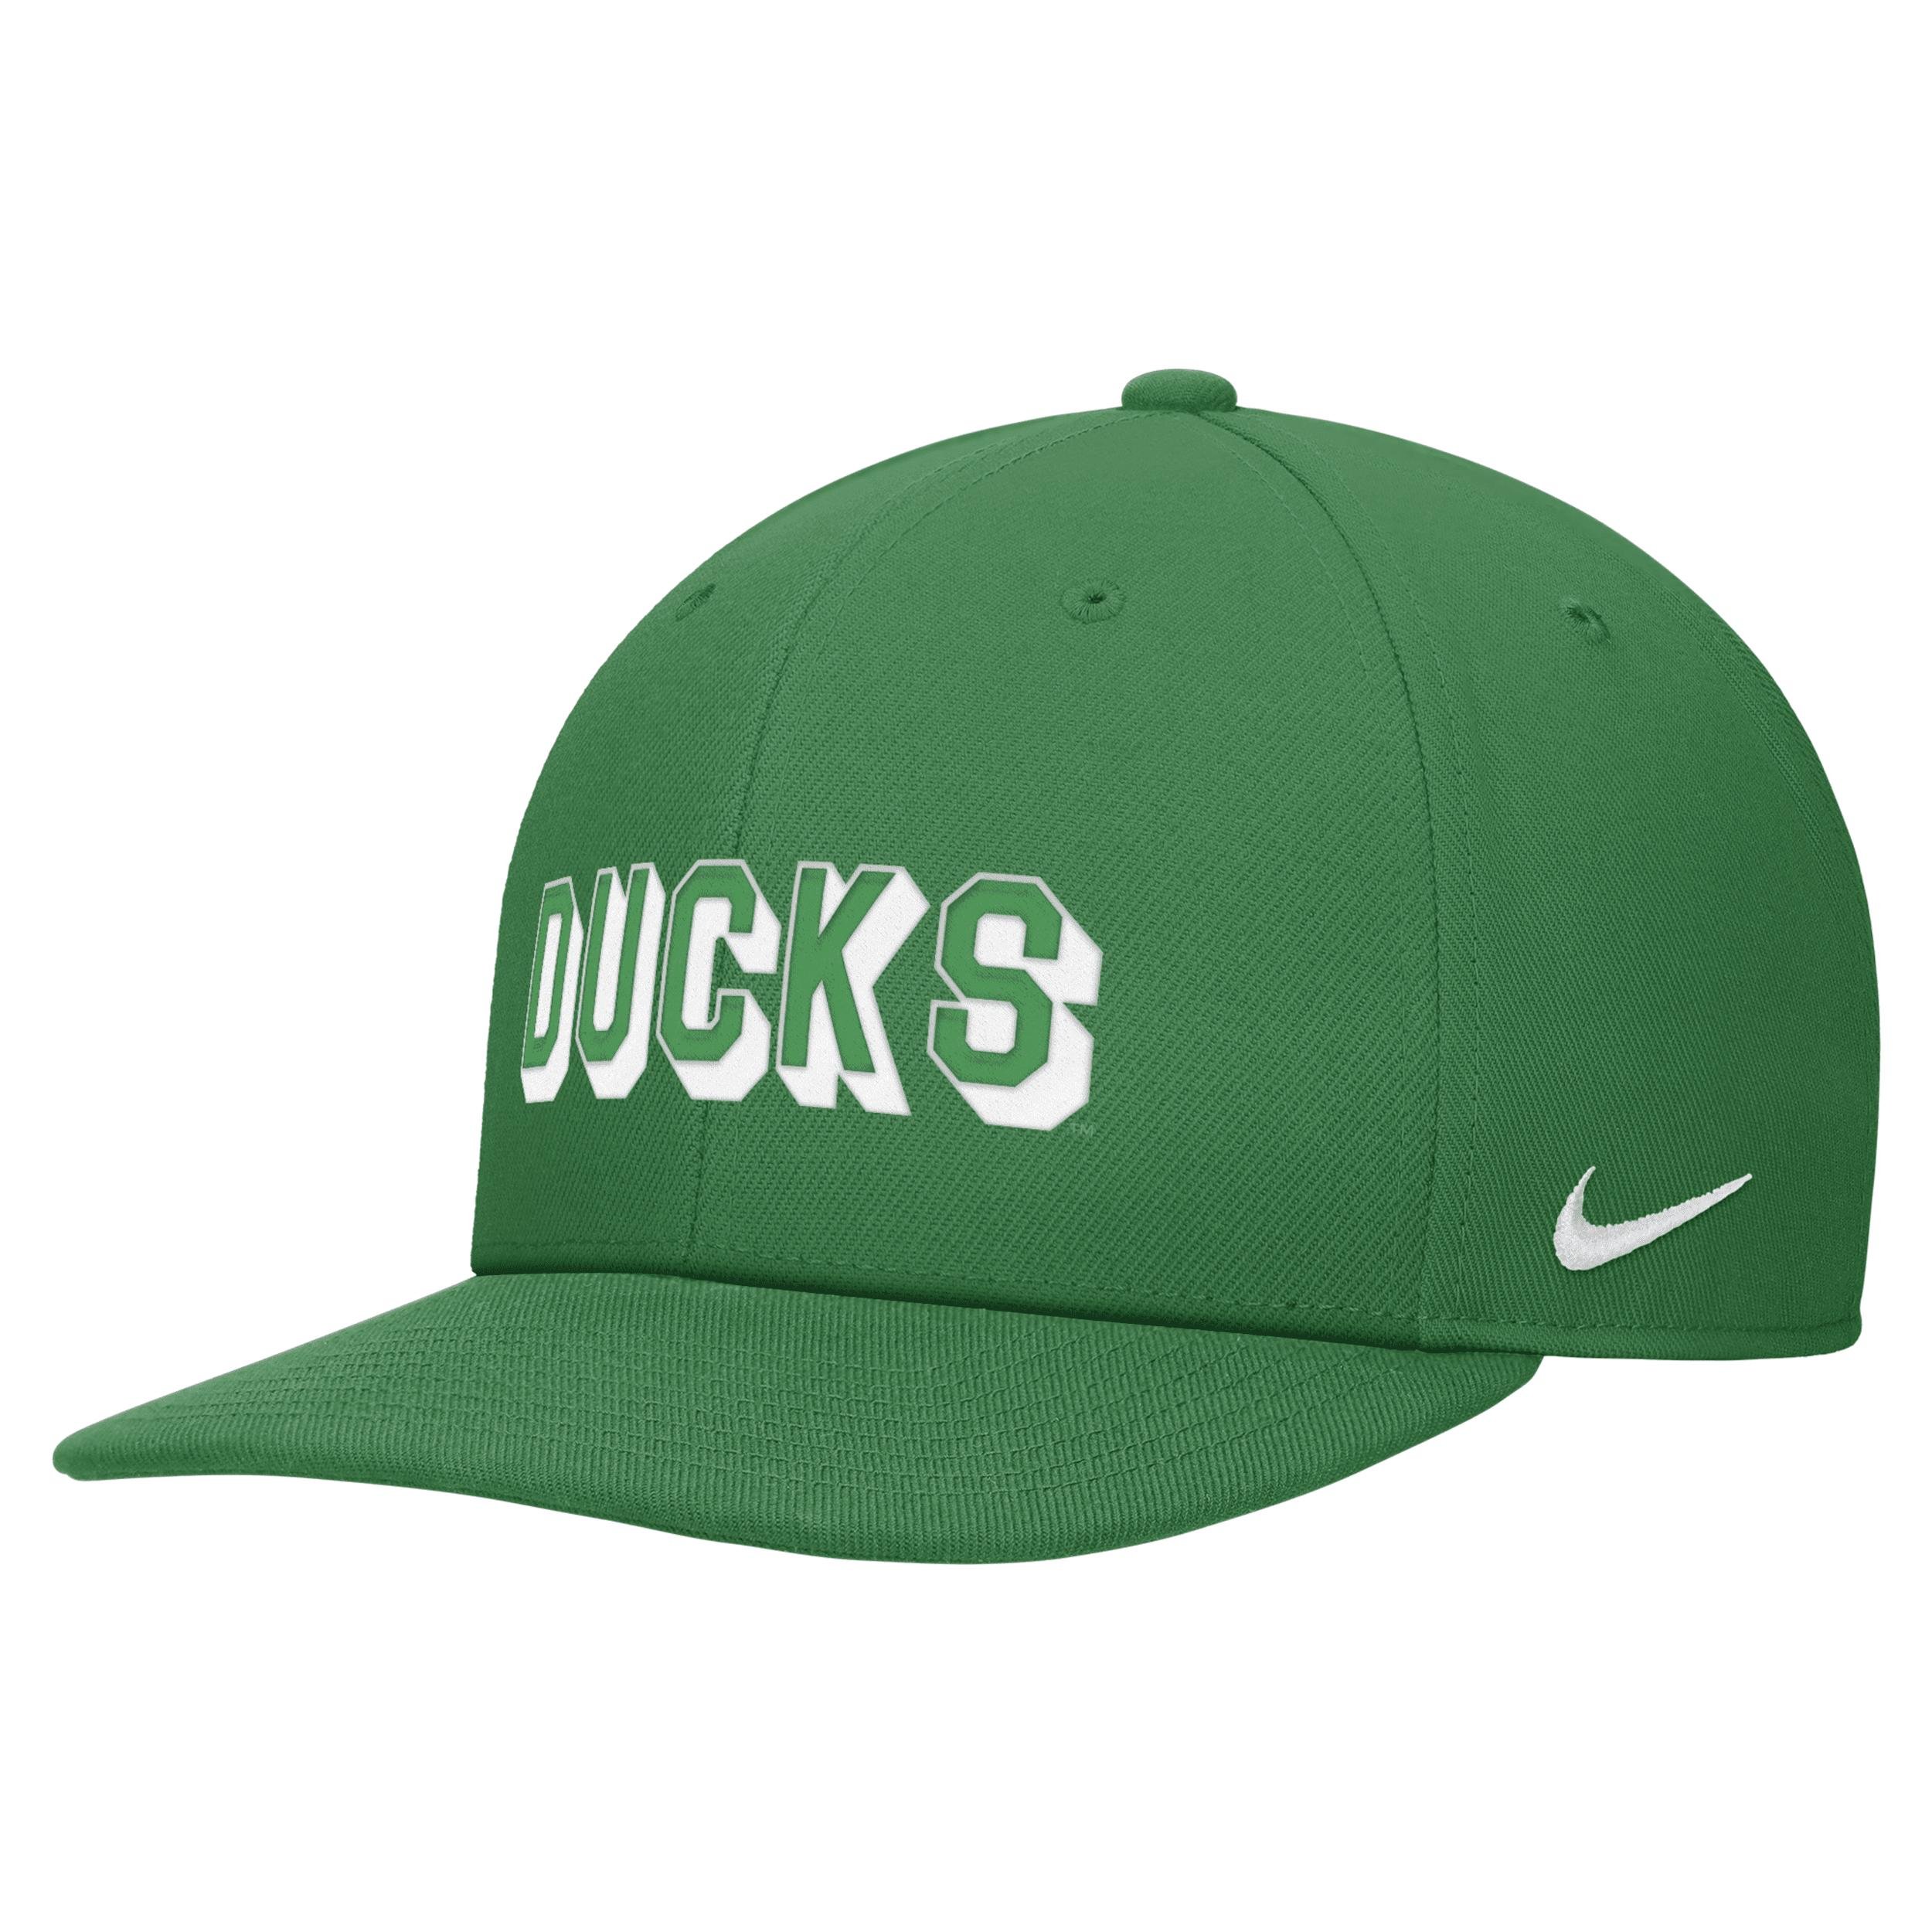 Oregon Nike Unisex College Snapback Hat by NIKE